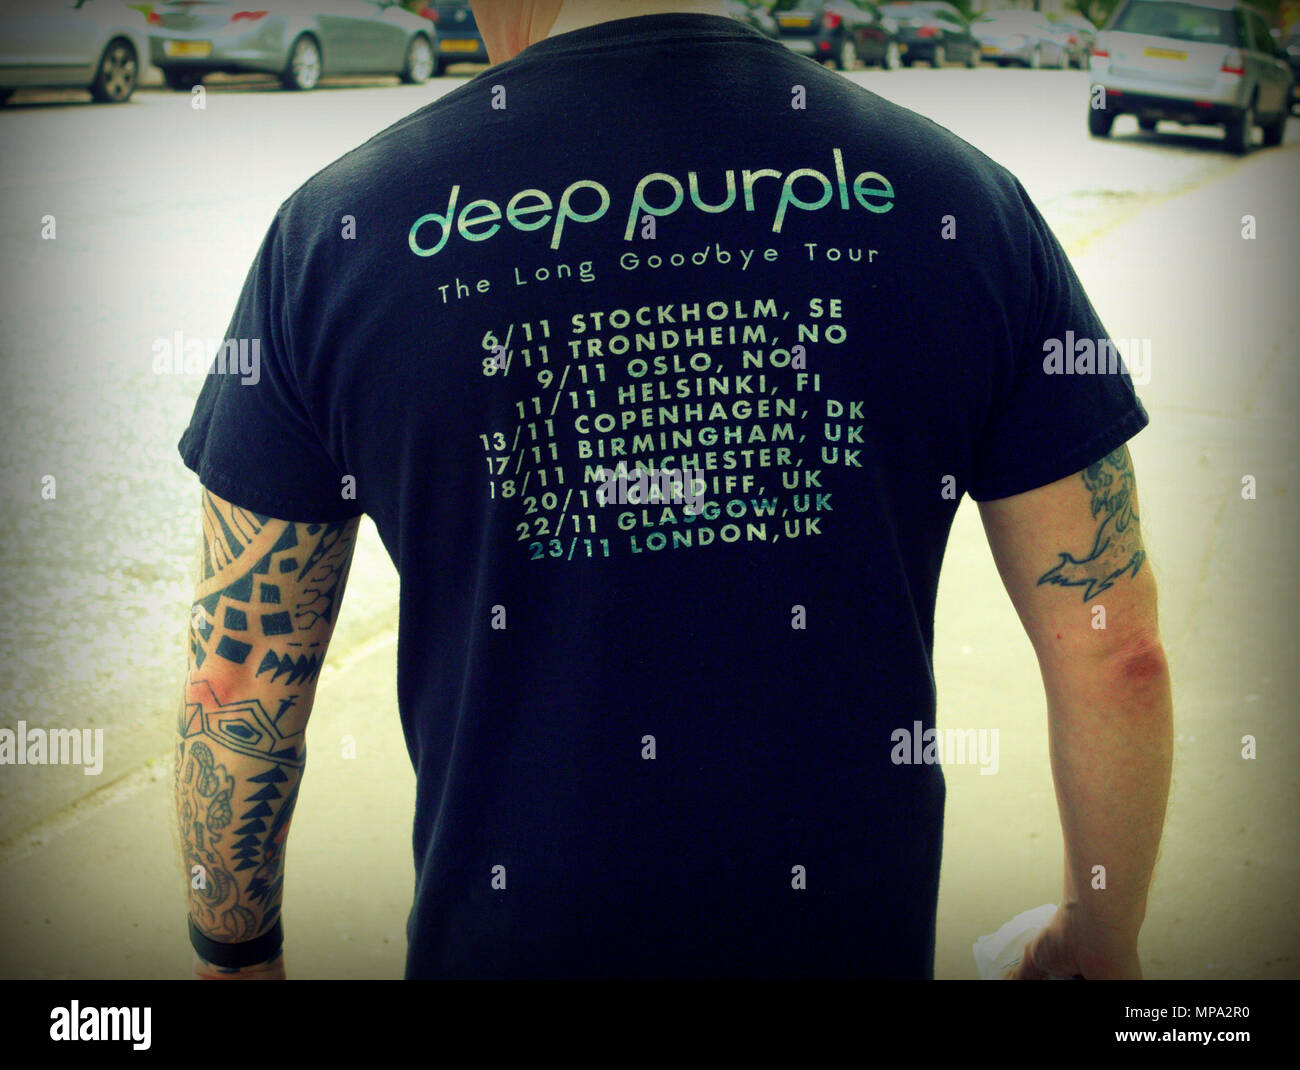 Deep Purple der lange Abschied tour t-shirt mit Ventilator Tattoos gesehen von hinten Stockfoto